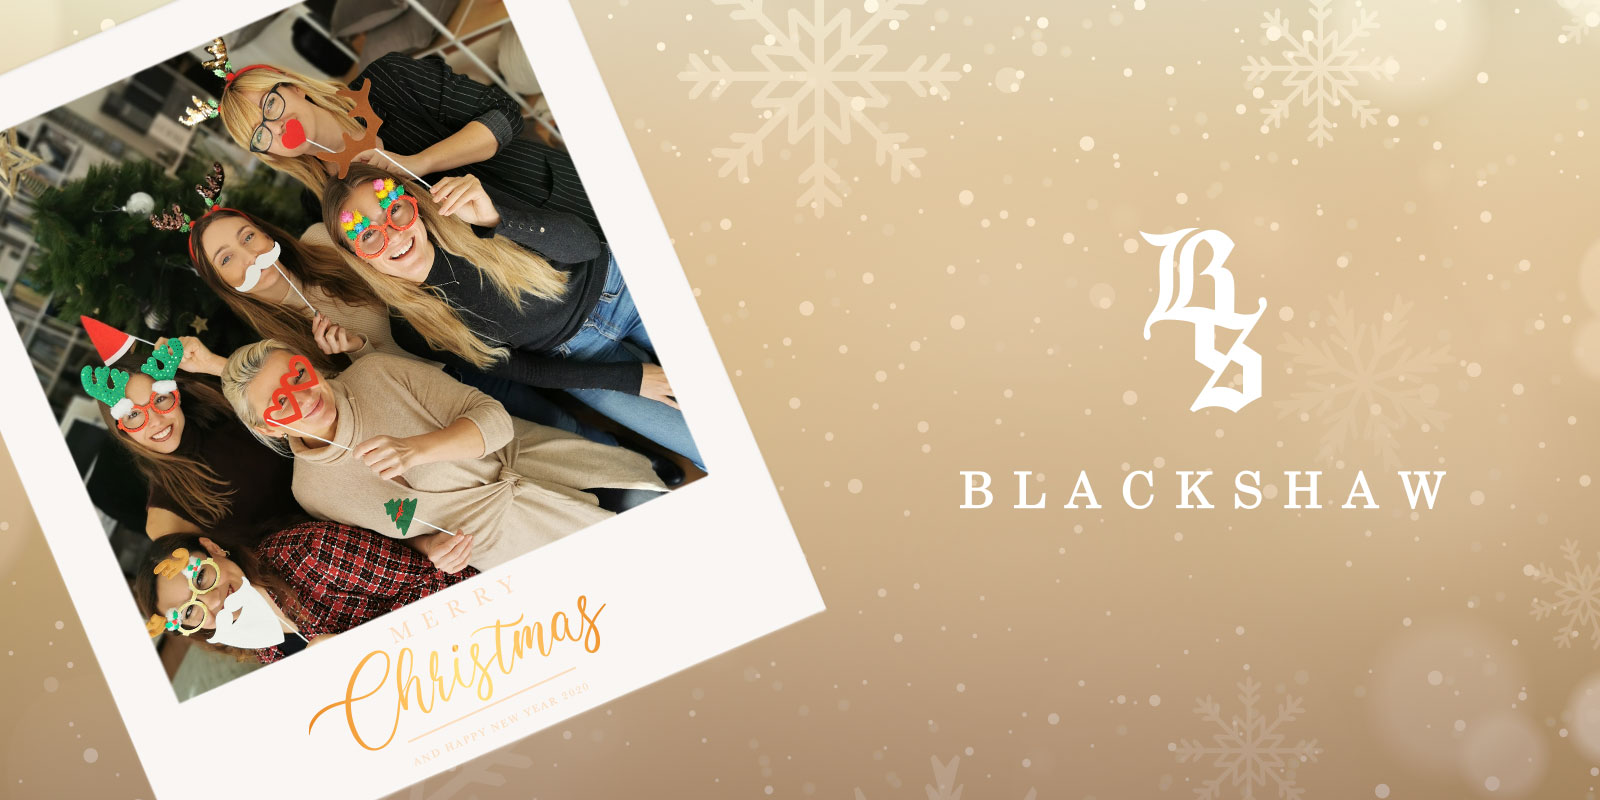 Merry Christmas from Blackshaw team